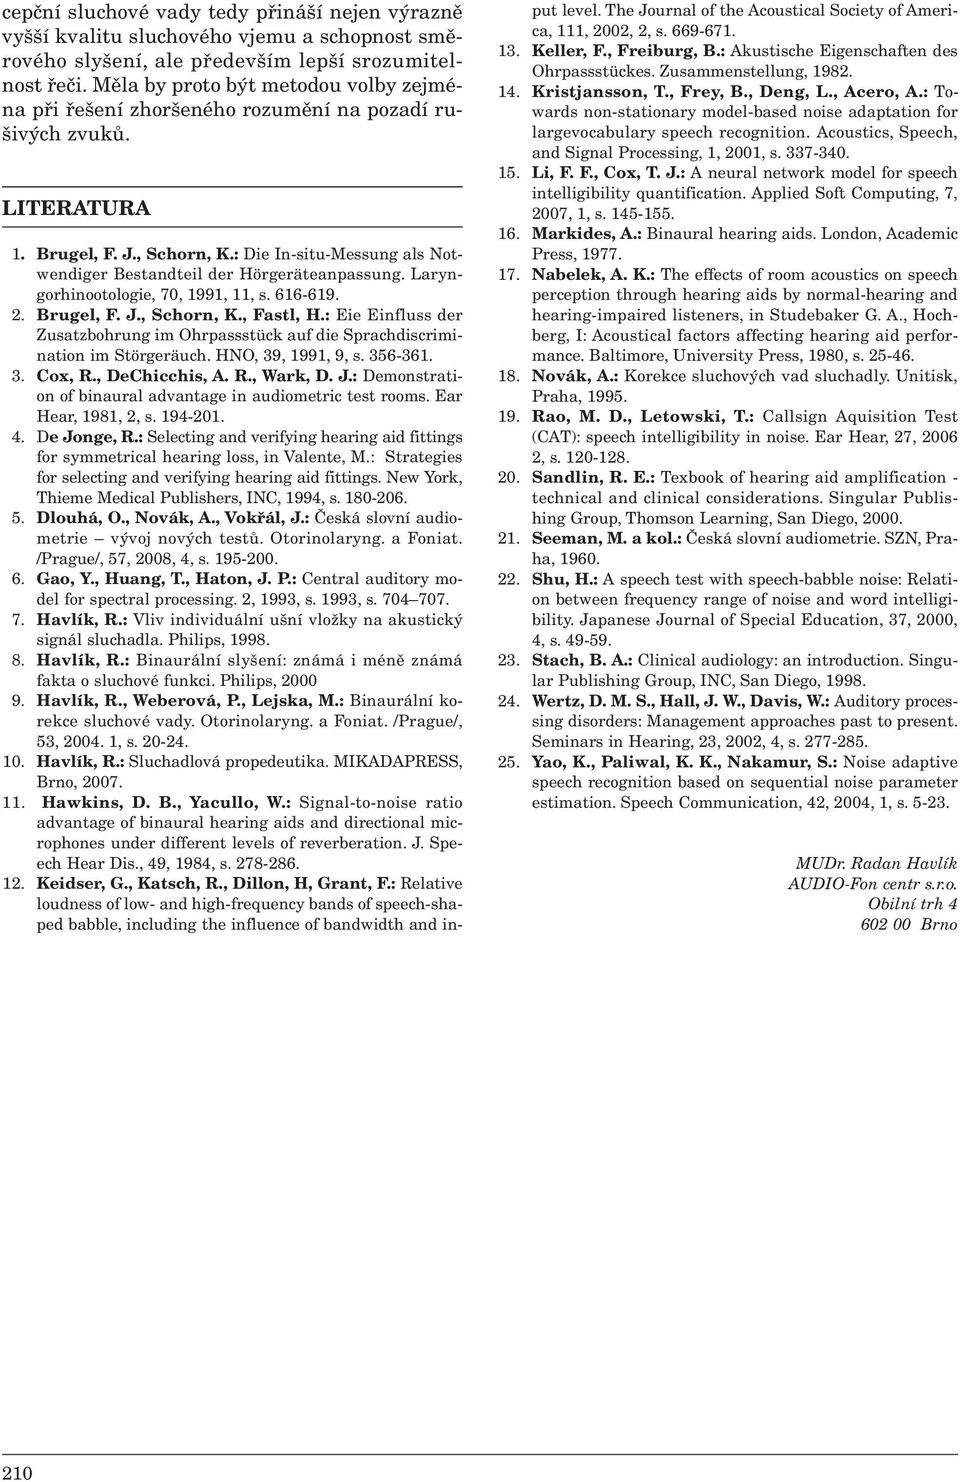 : Die In-situ-Messung als Notwendiger Bestandteil der Hörgeräteanpassung. Laryngorhinootologie, 70, 1991, 11, s. 616-619. 2. Brugel, F. J., Schorn, K., Fastl, H.